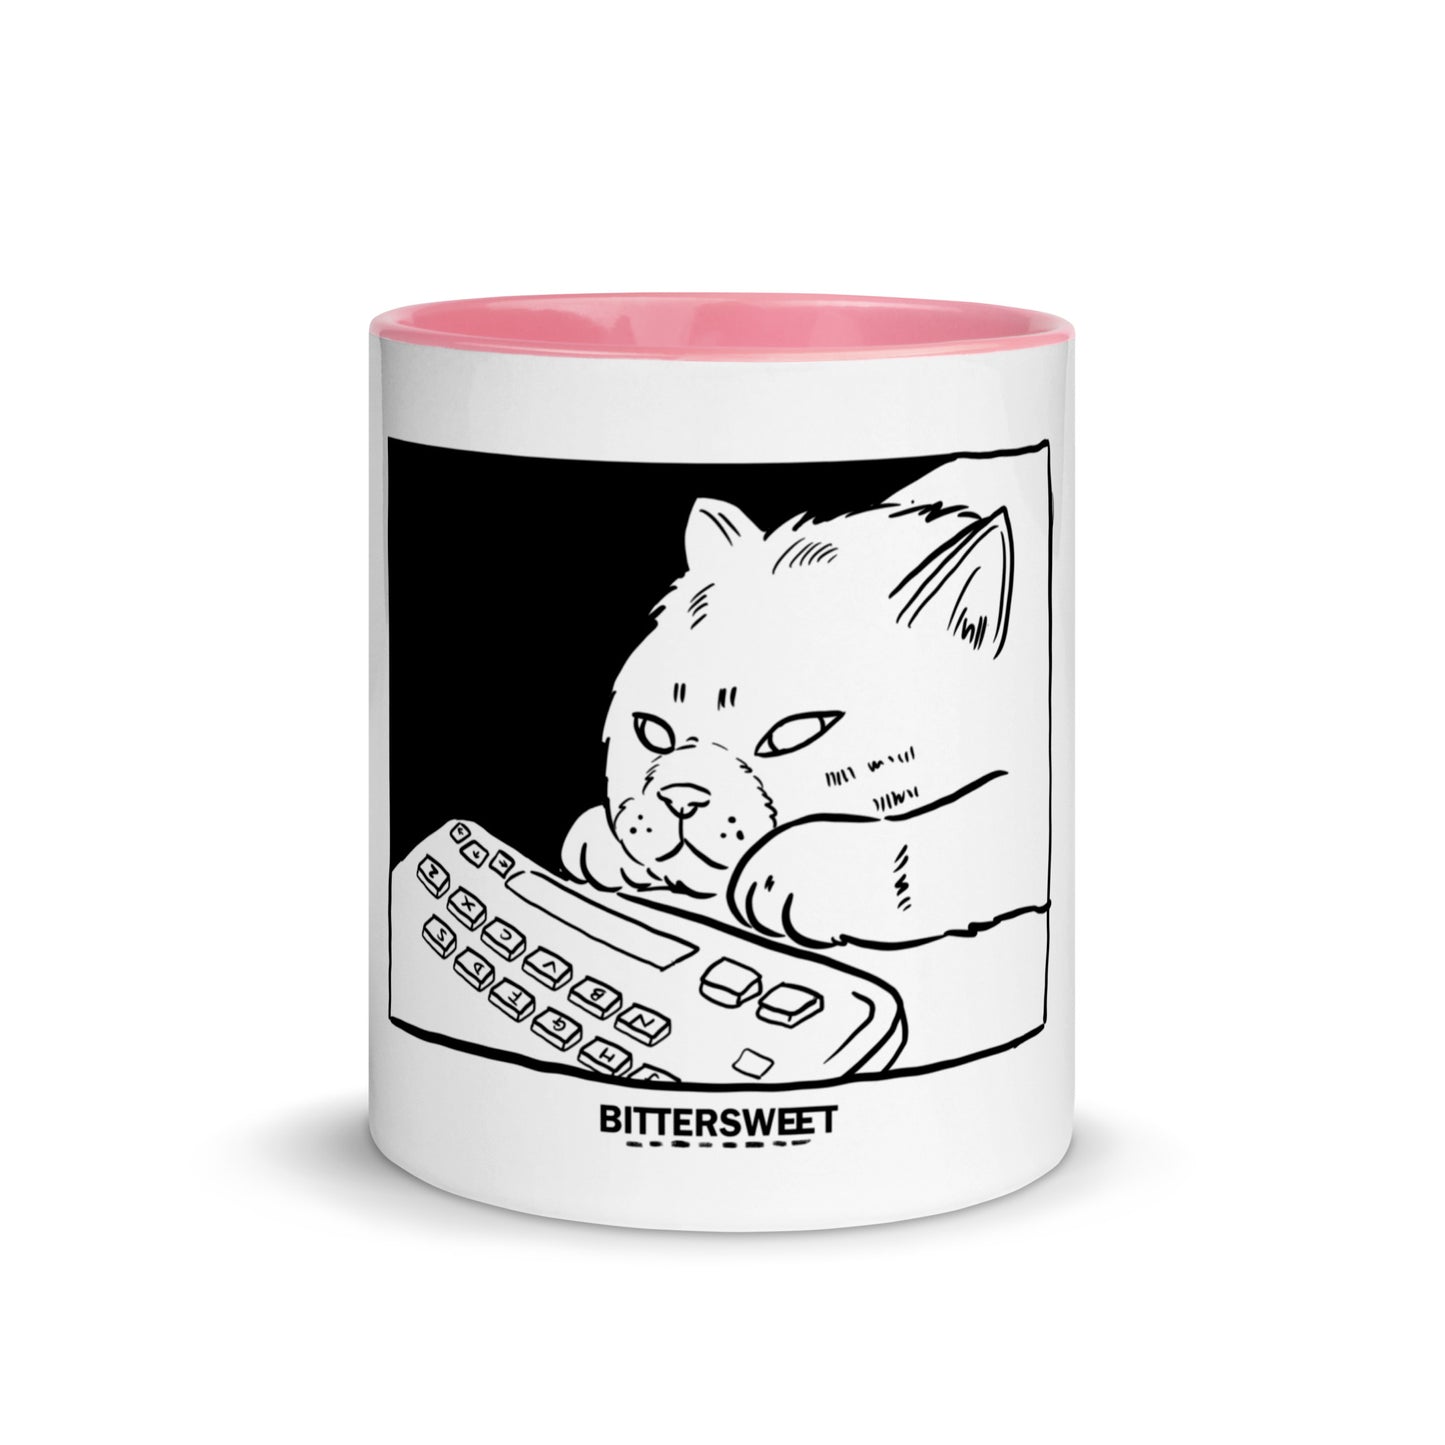 Hate Mondays - Coffee mugs, cat mugs